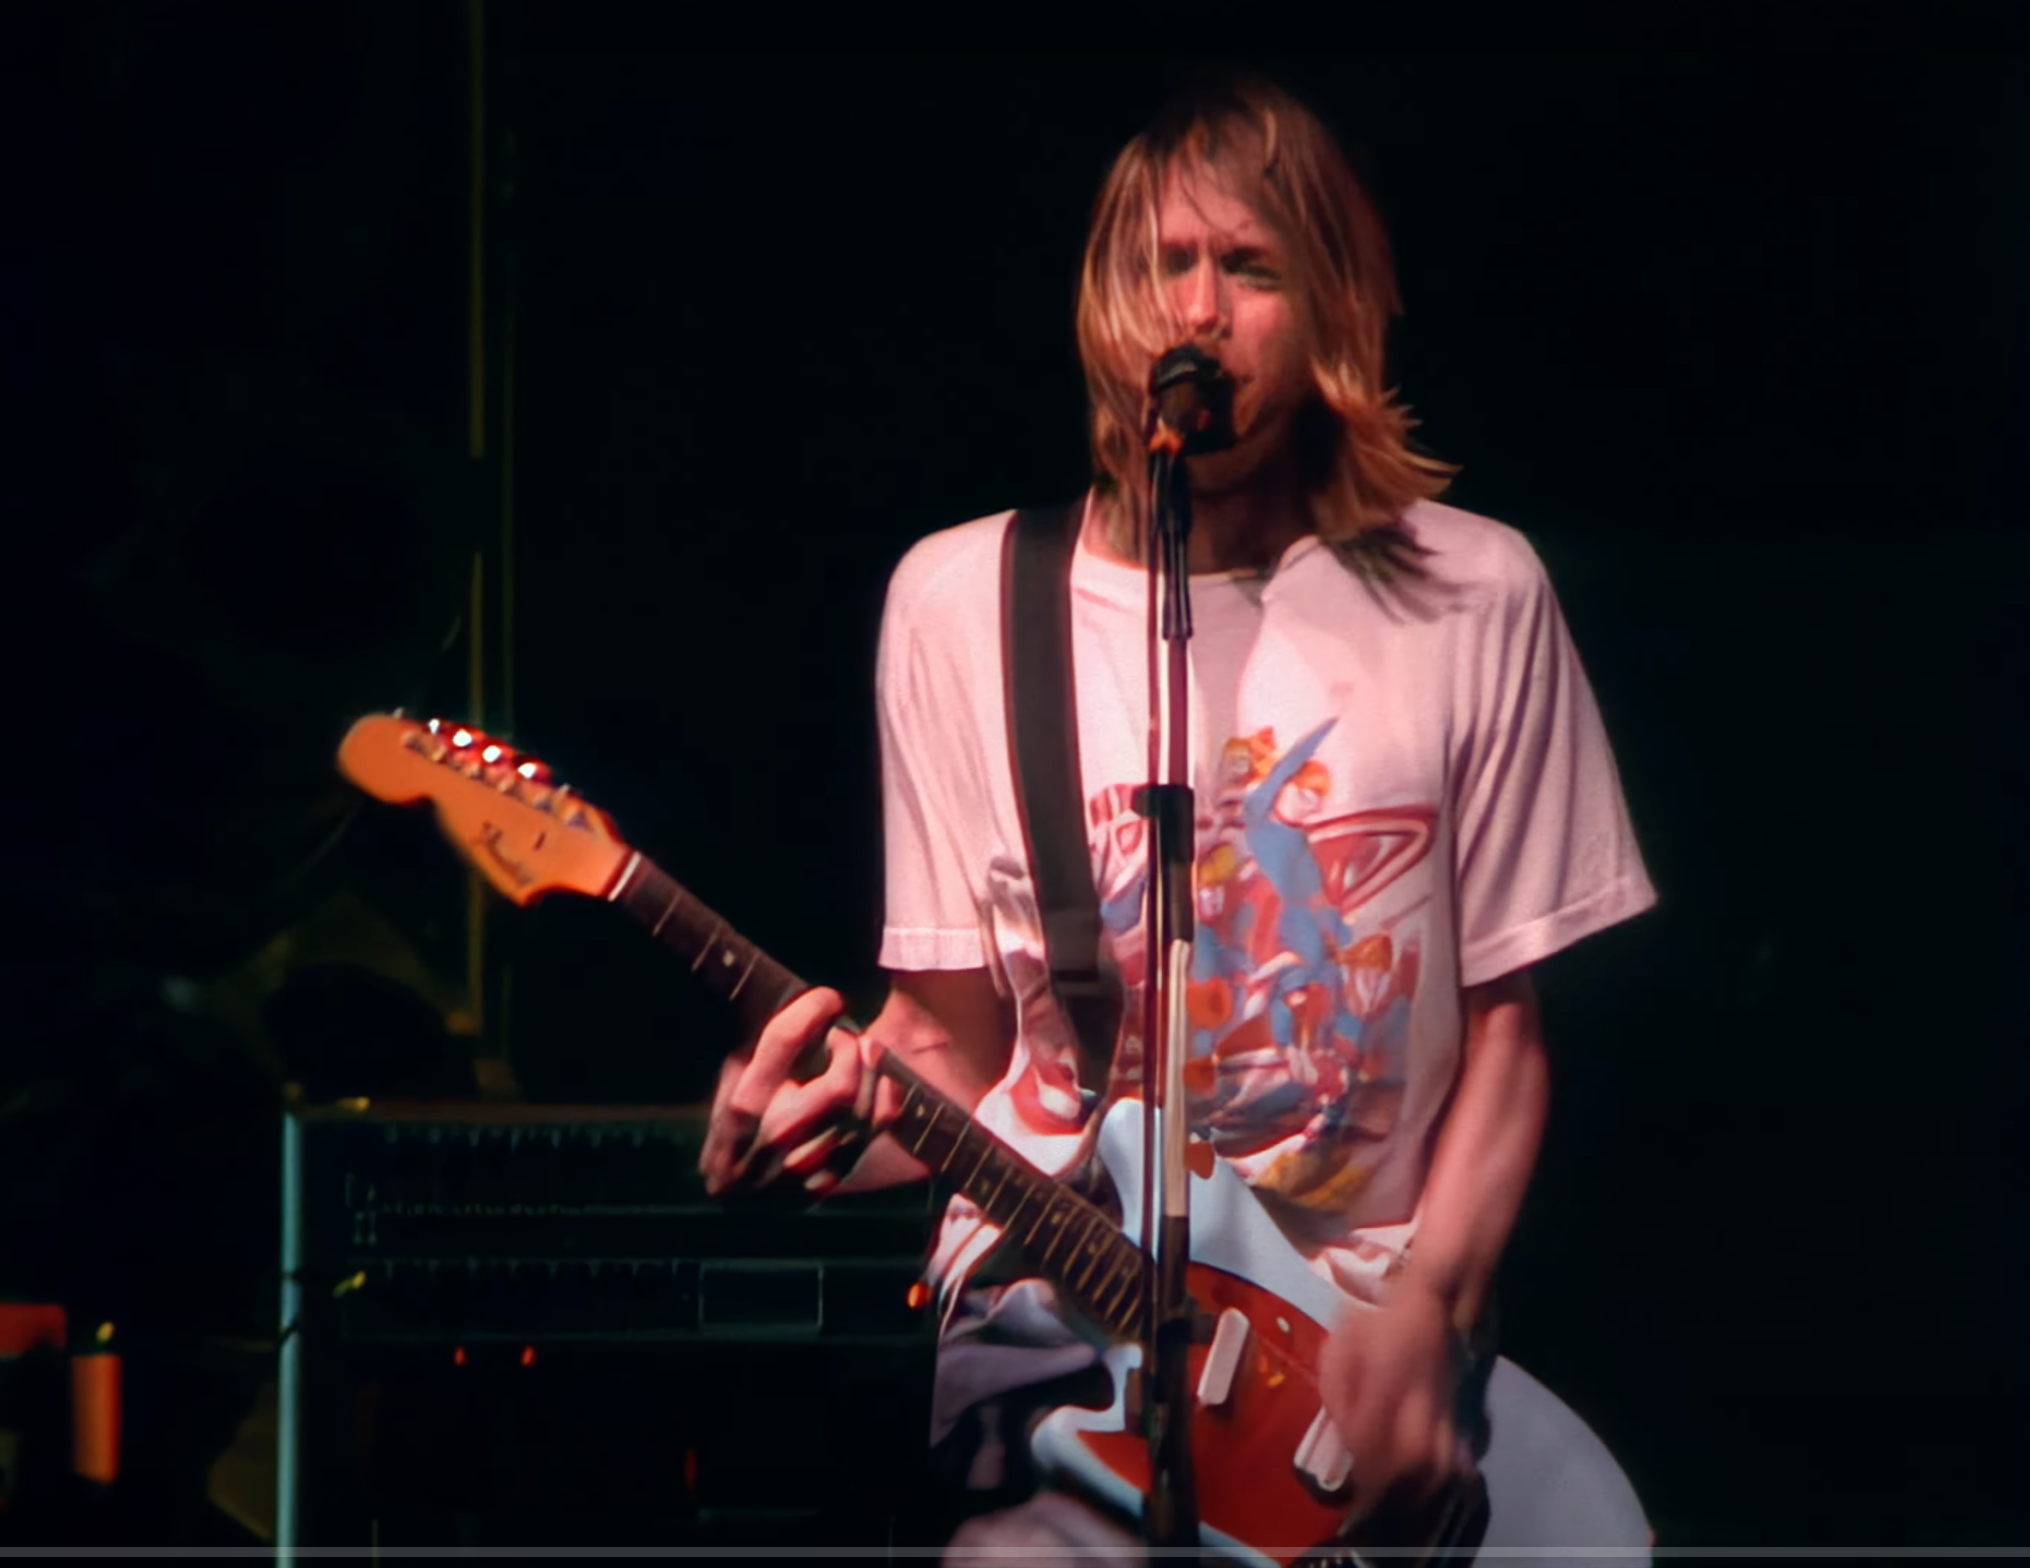 Am 1. März 1994 geben Nirvana ihr letztes Konzert jemals. Es findet im Terminal 1 in München statt. Cobain hat keine Lust mehr darauf, immer wieder die gleichen Hits zu spielen. So streicht er beispielsweise "Smells like Teen Spirit" von der Setlist.